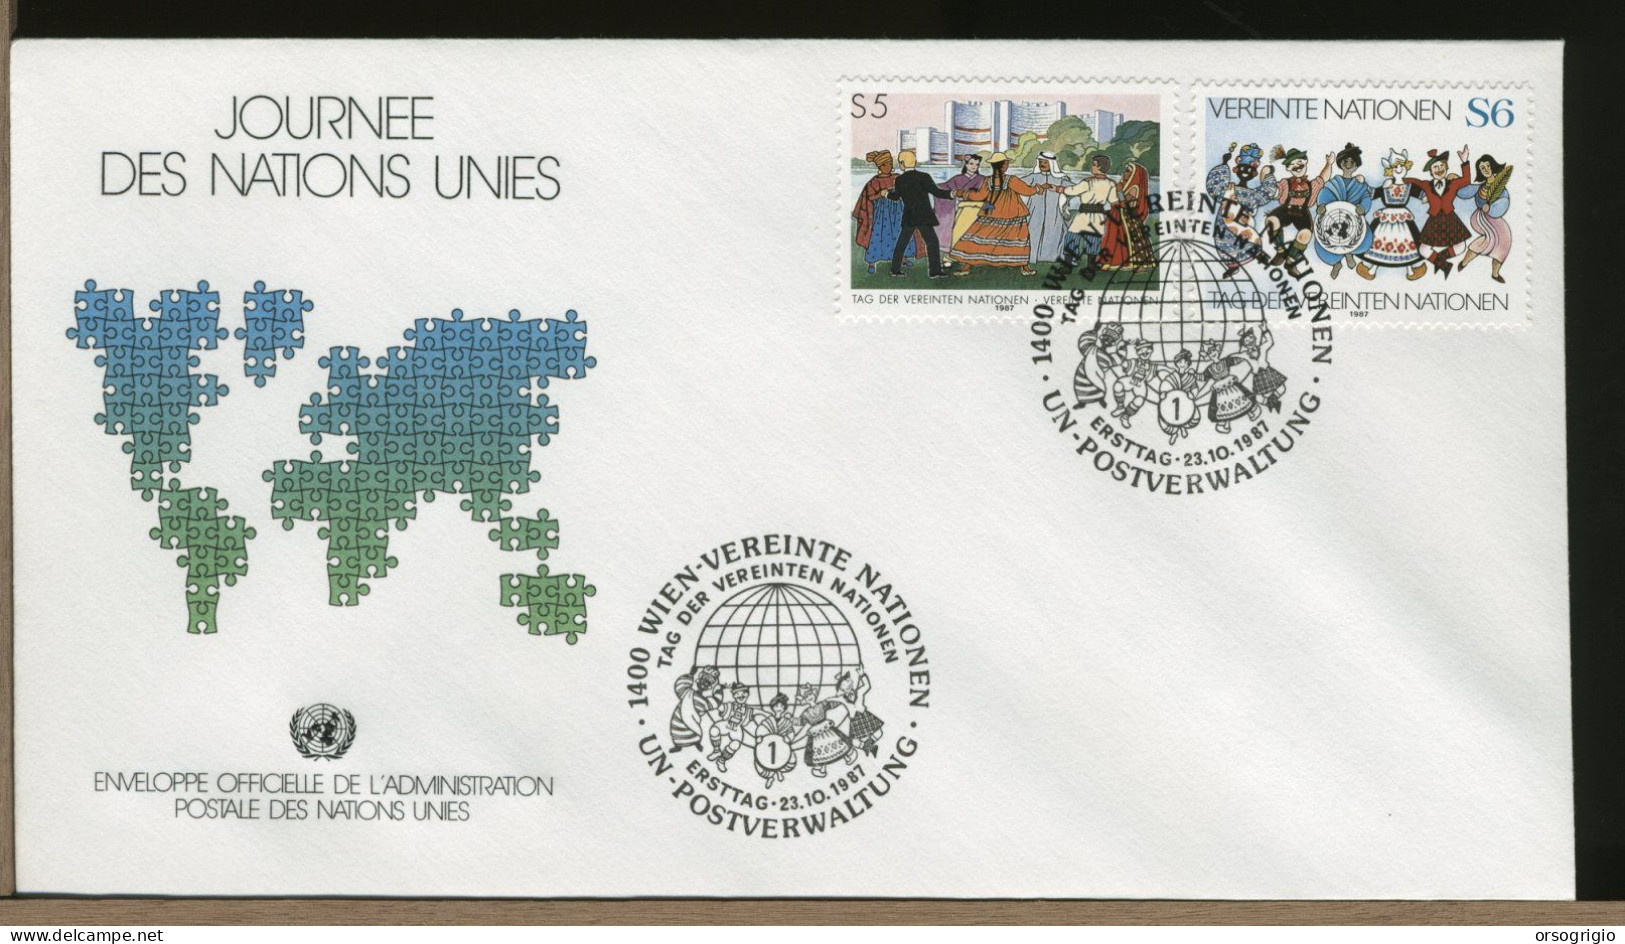 ONU - UNITED NATIONS - FDC 1987 - Gezamelijke Uitgaven New York/Genève/Wenen